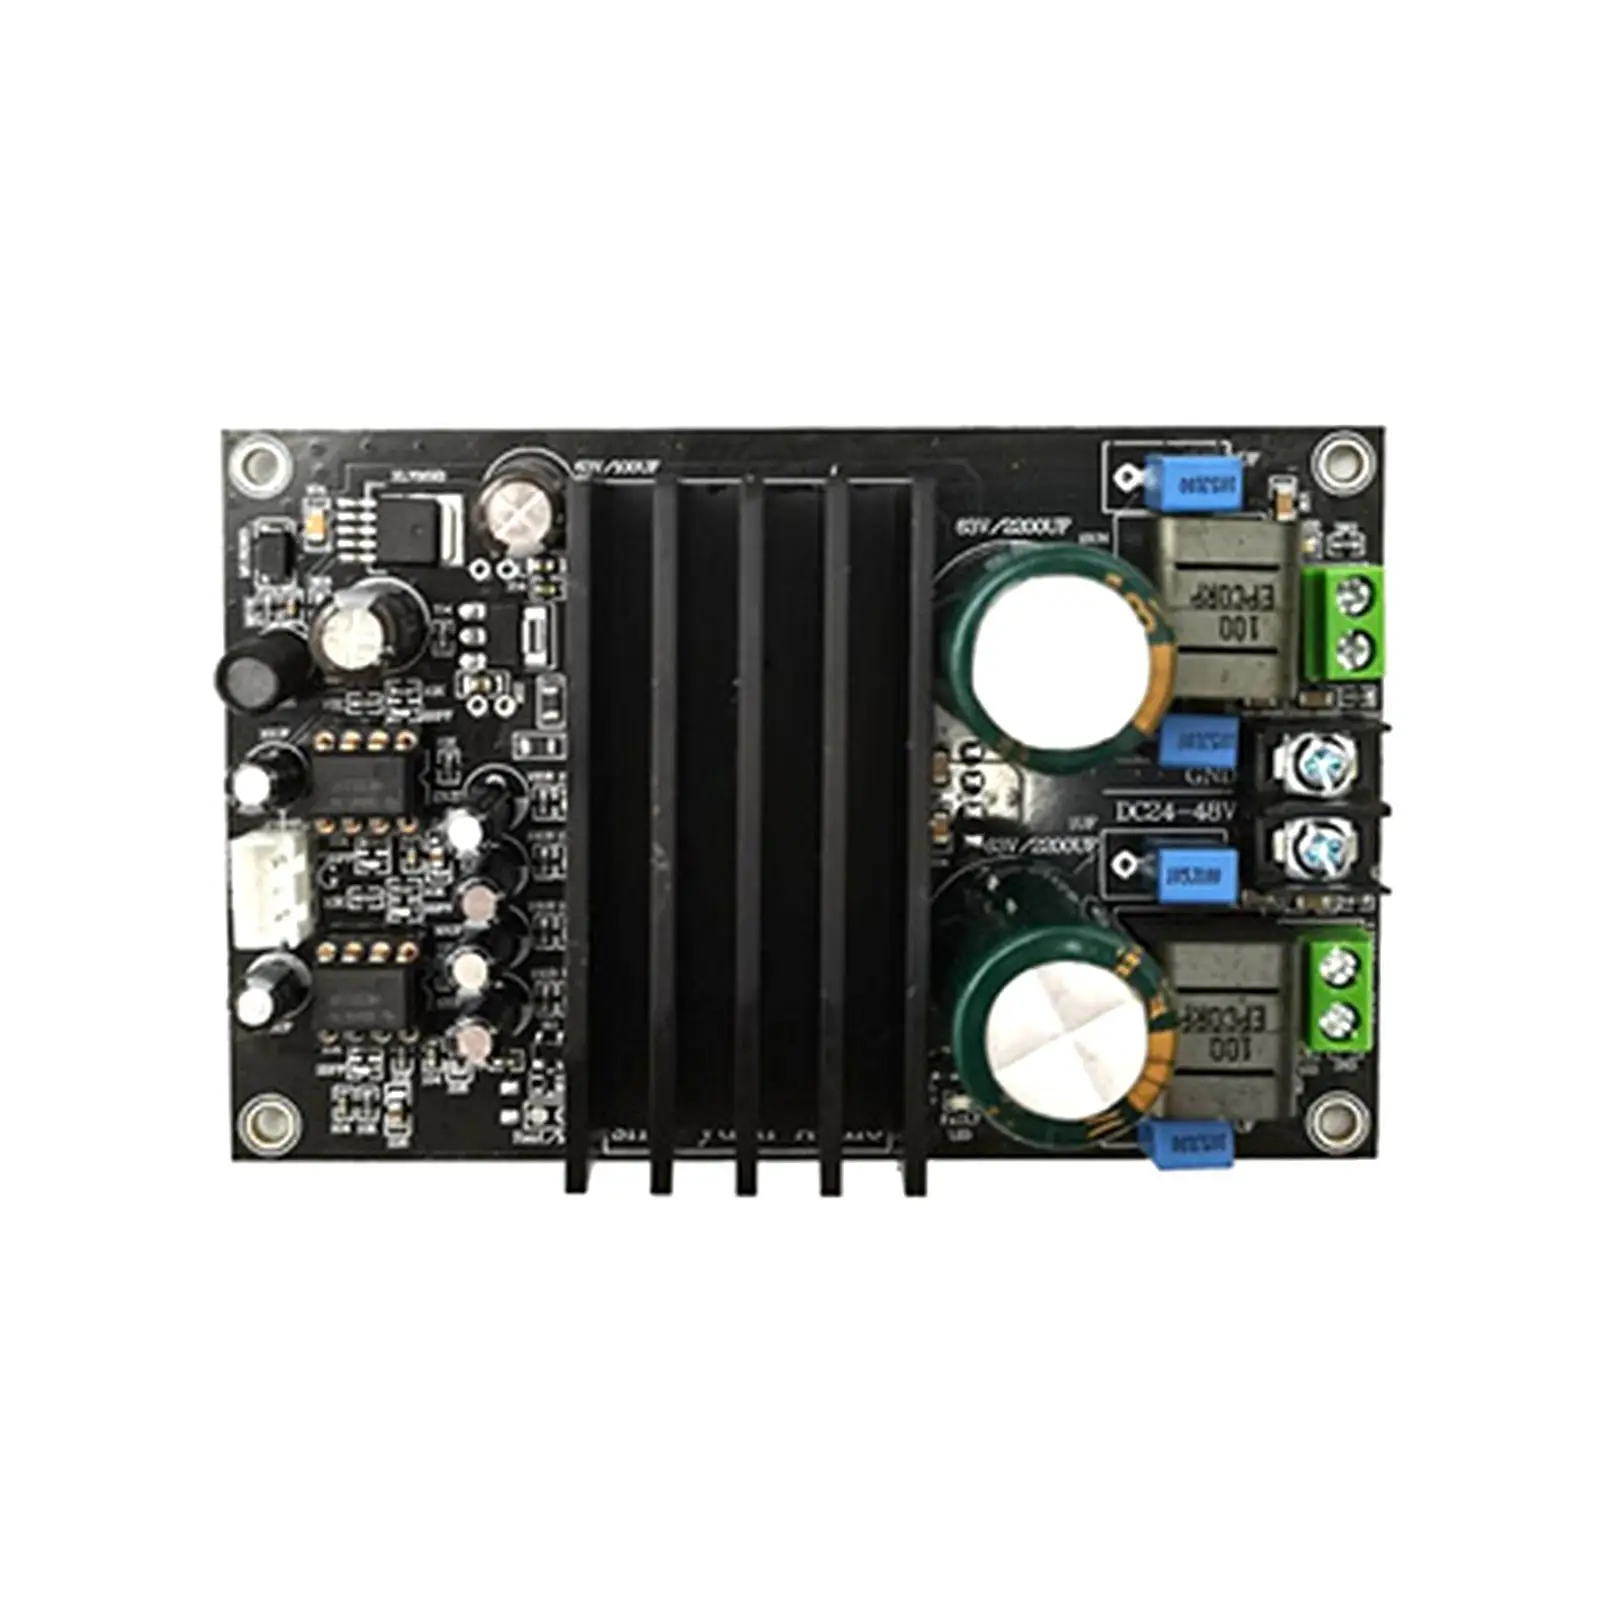 Digital Power Amplifier Board TPA3255 2.0 Channel Mini Digital Audio Amplification Amplifier Module for Speaker DIY Sound System